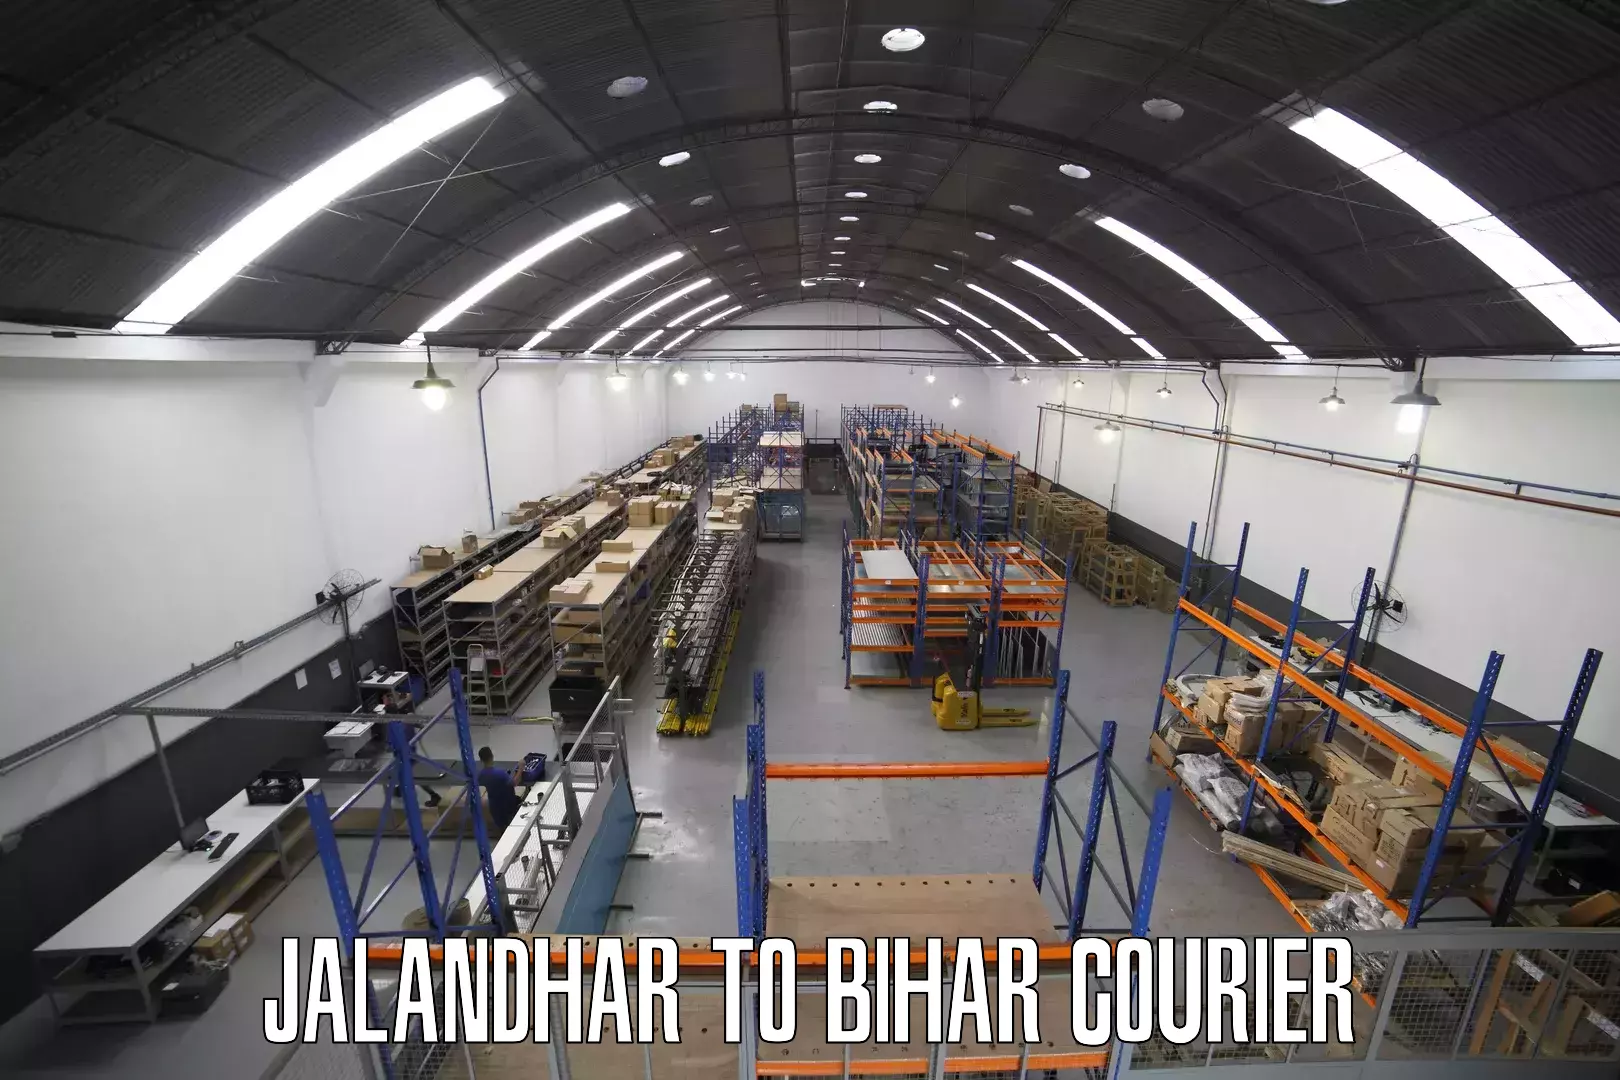 Discount courier rates Jalandhar to Alamnagar